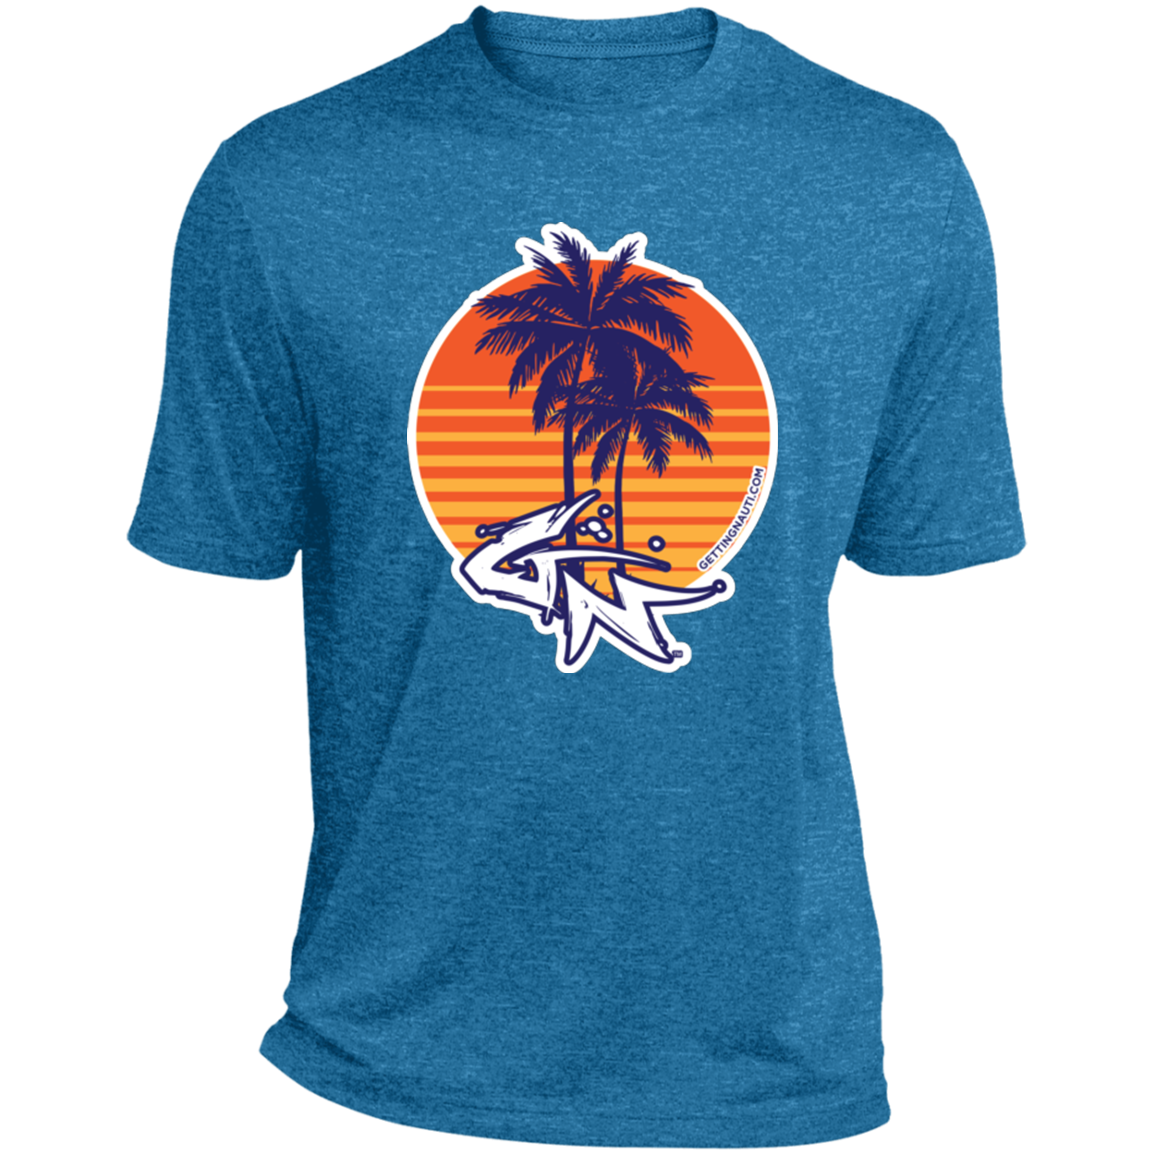 Retro Palm Trees - Performance T-Shirt